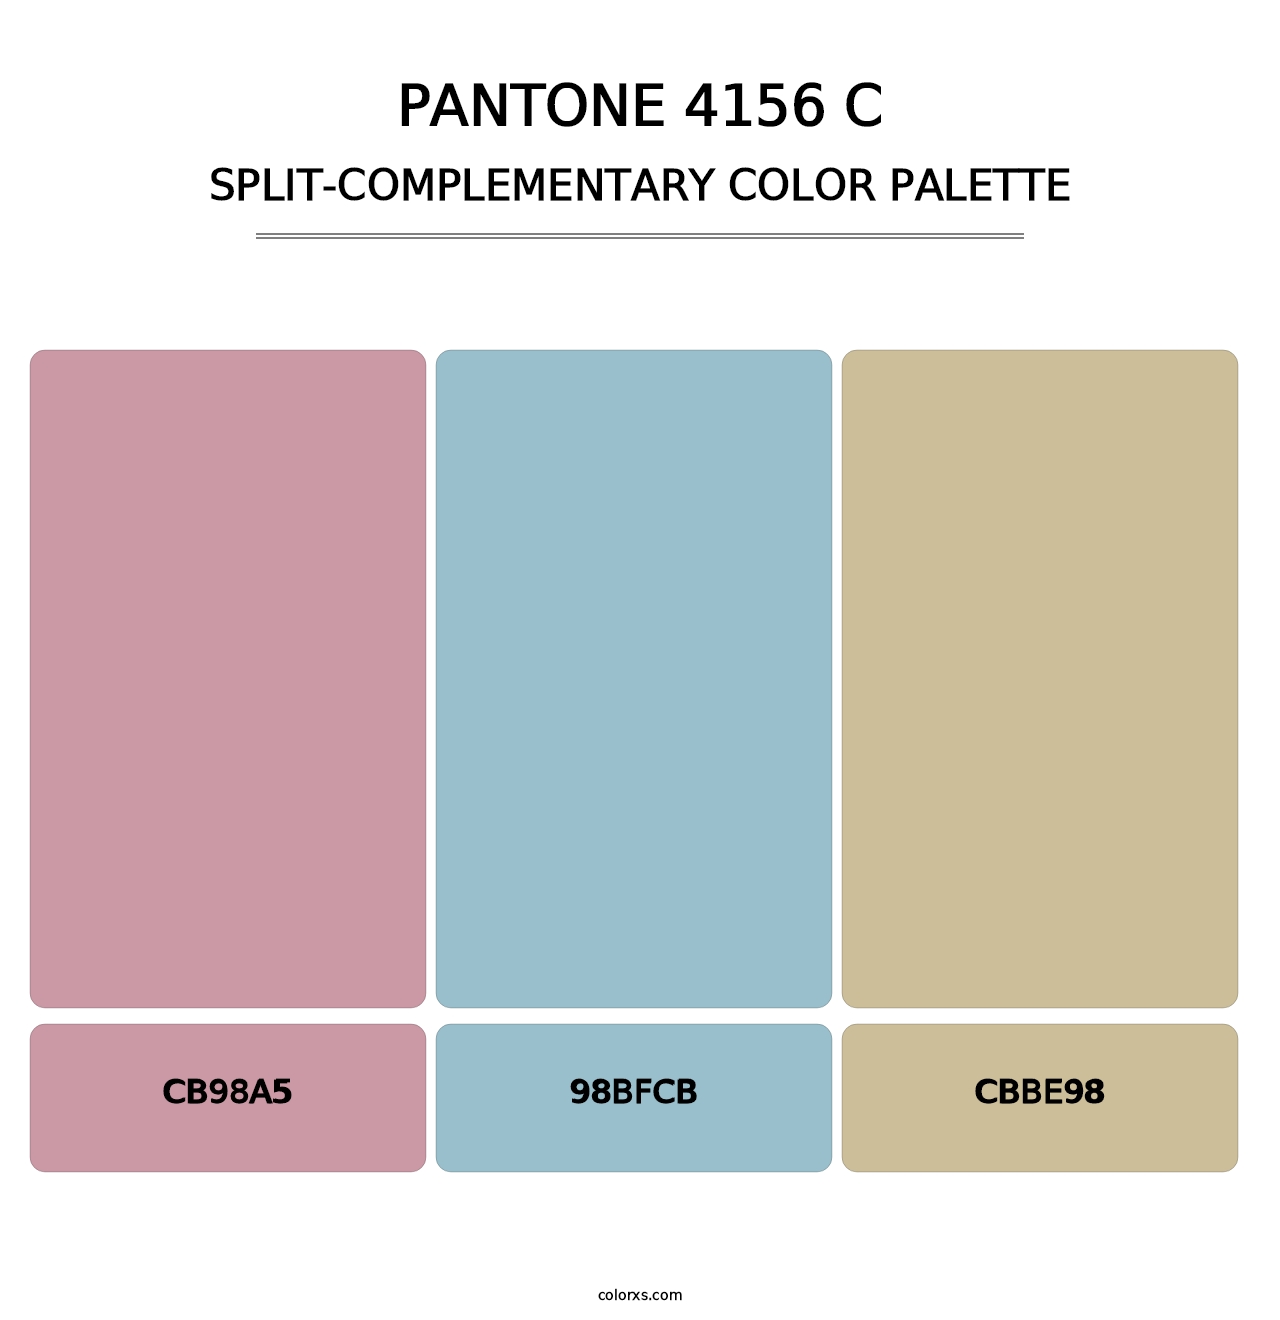 PANTONE 4156 C - Split-Complementary Color Palette